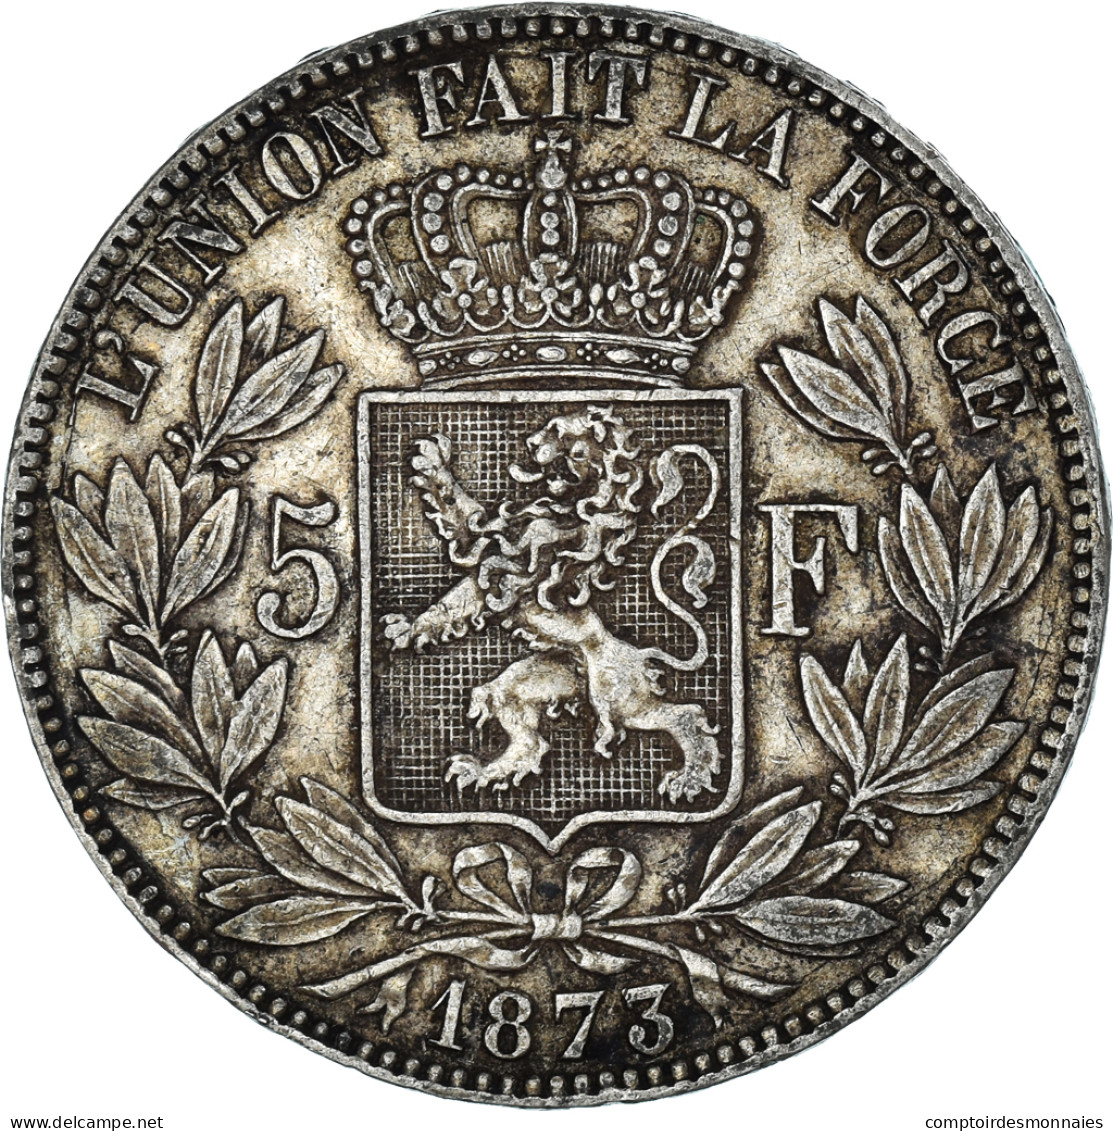 Monnaie, Belgique, Leopold II, 5 Francs, 5 Frank, 1873, TB+, Argent, KM:24 - 5 Frank